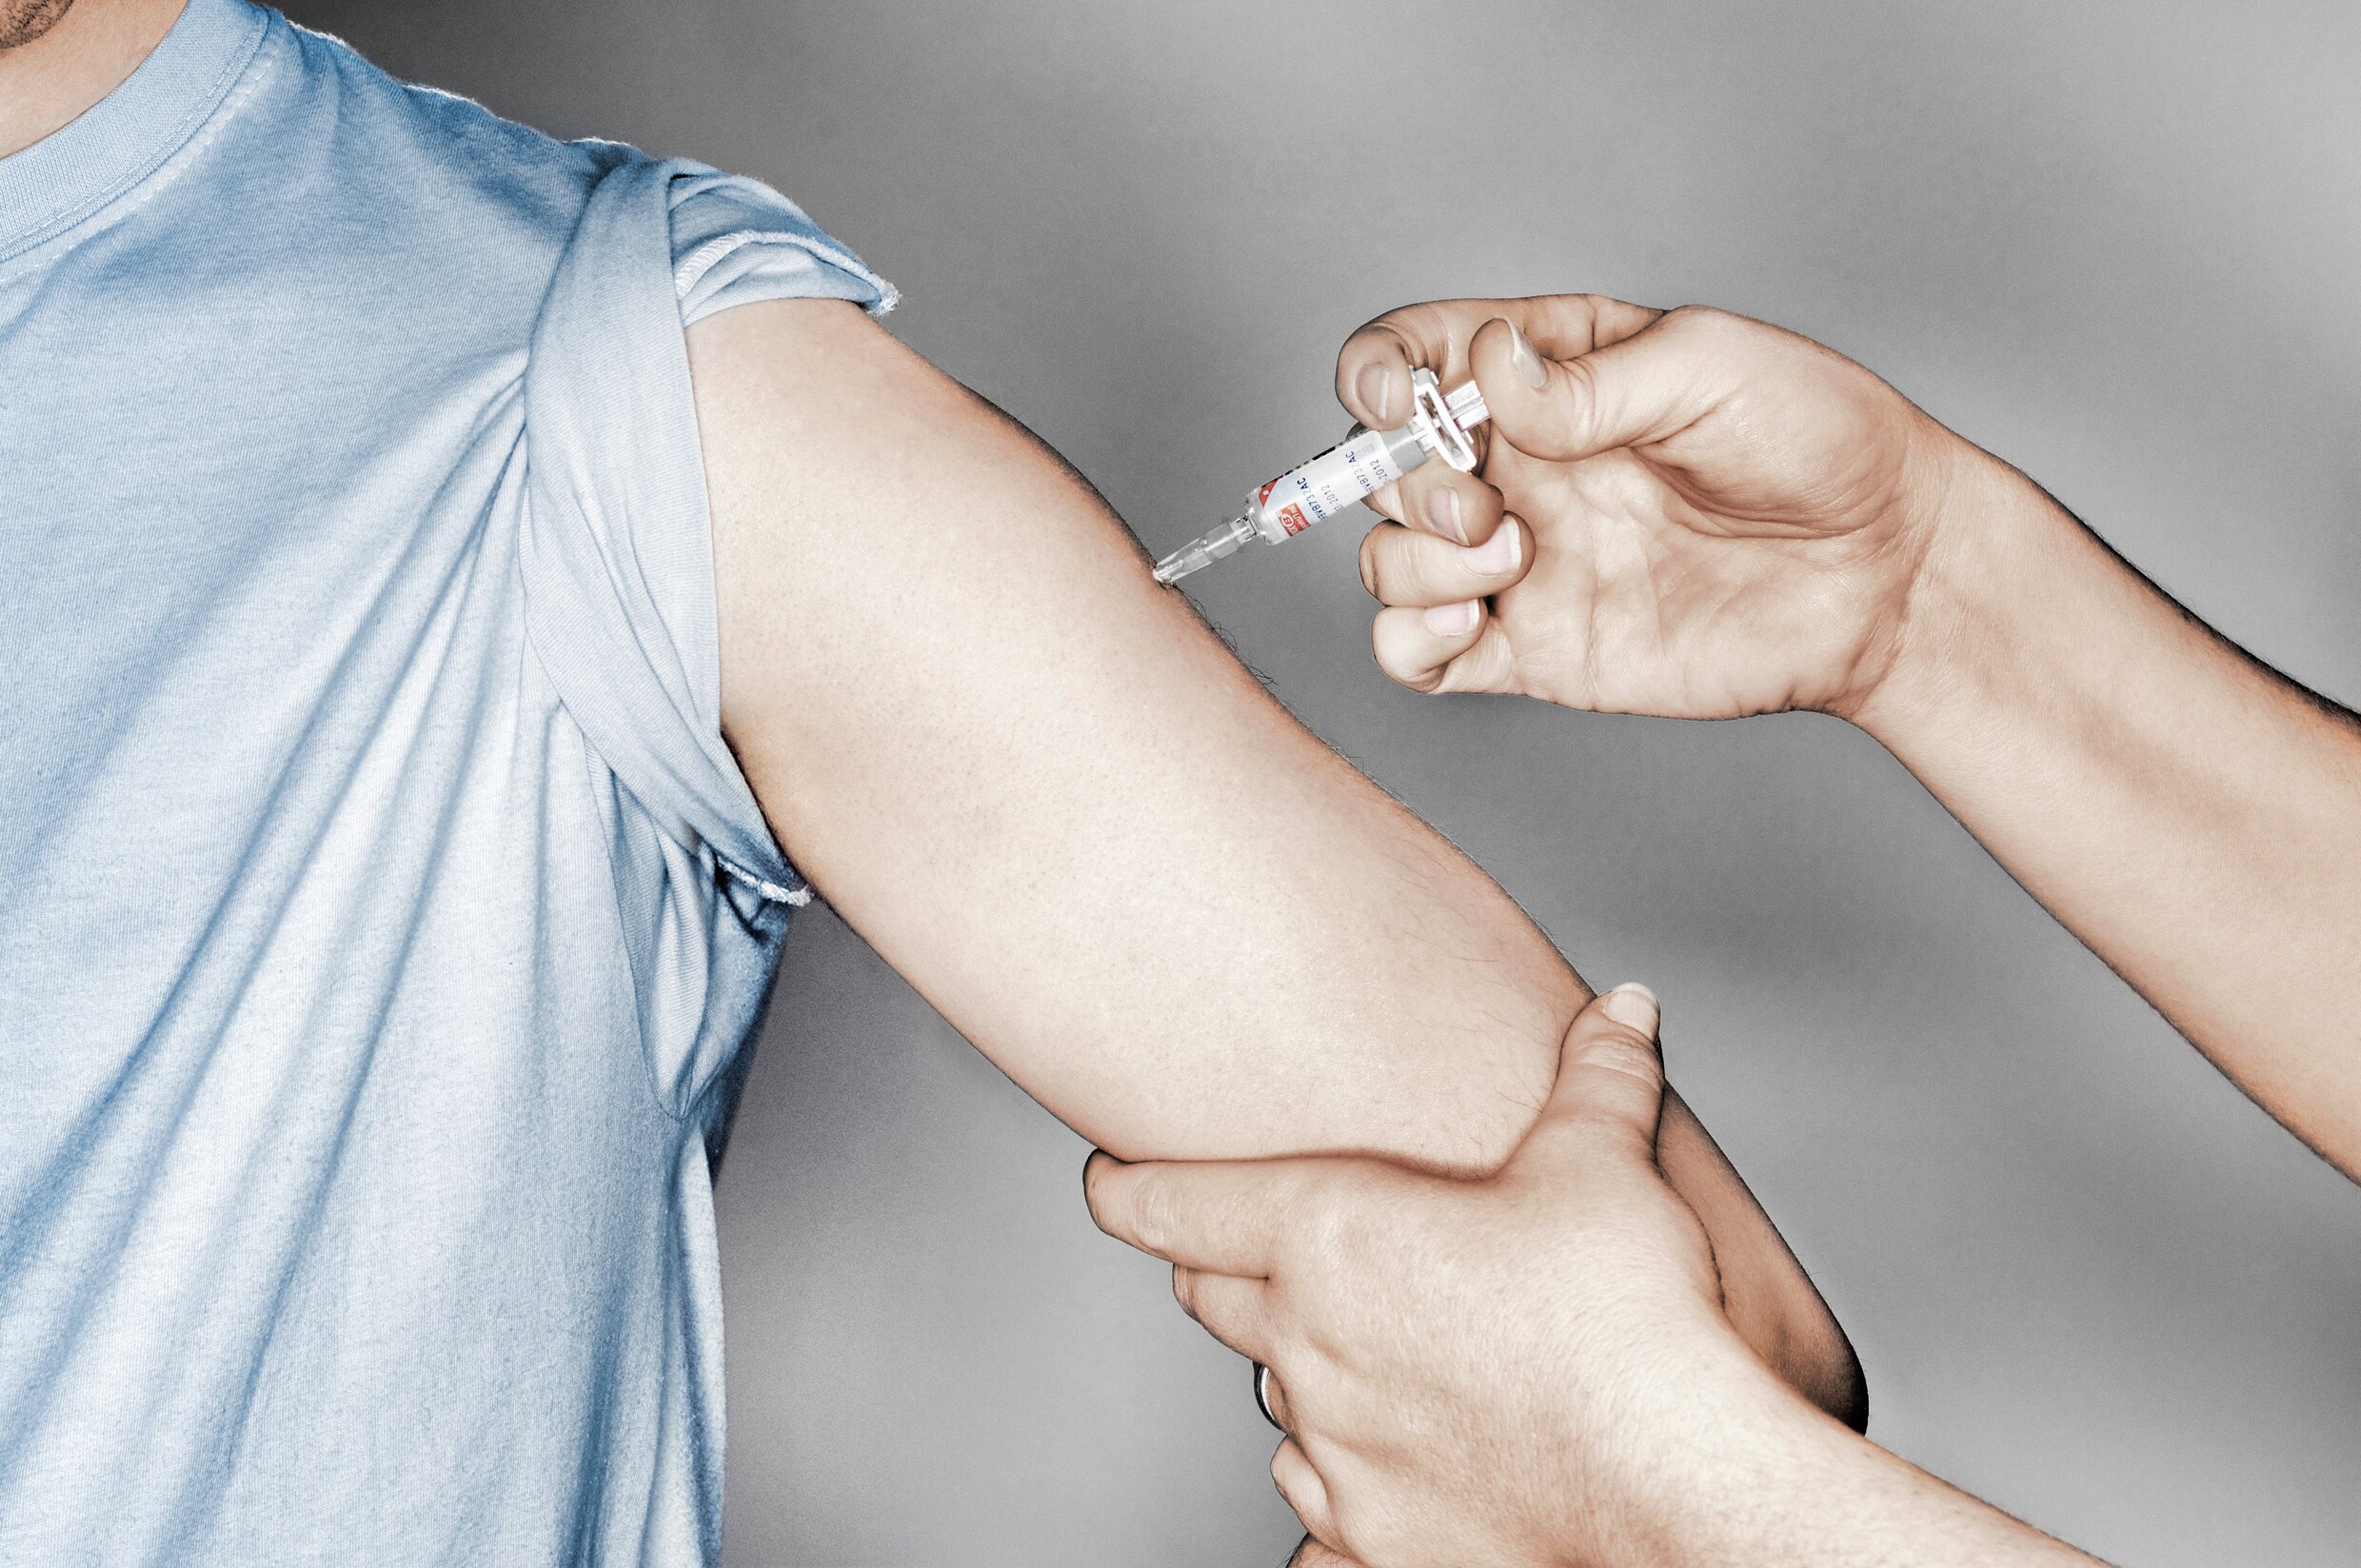 Wie zijn de Vlaamse vaccintwijfelaars? De groep is diverser dan u denkt